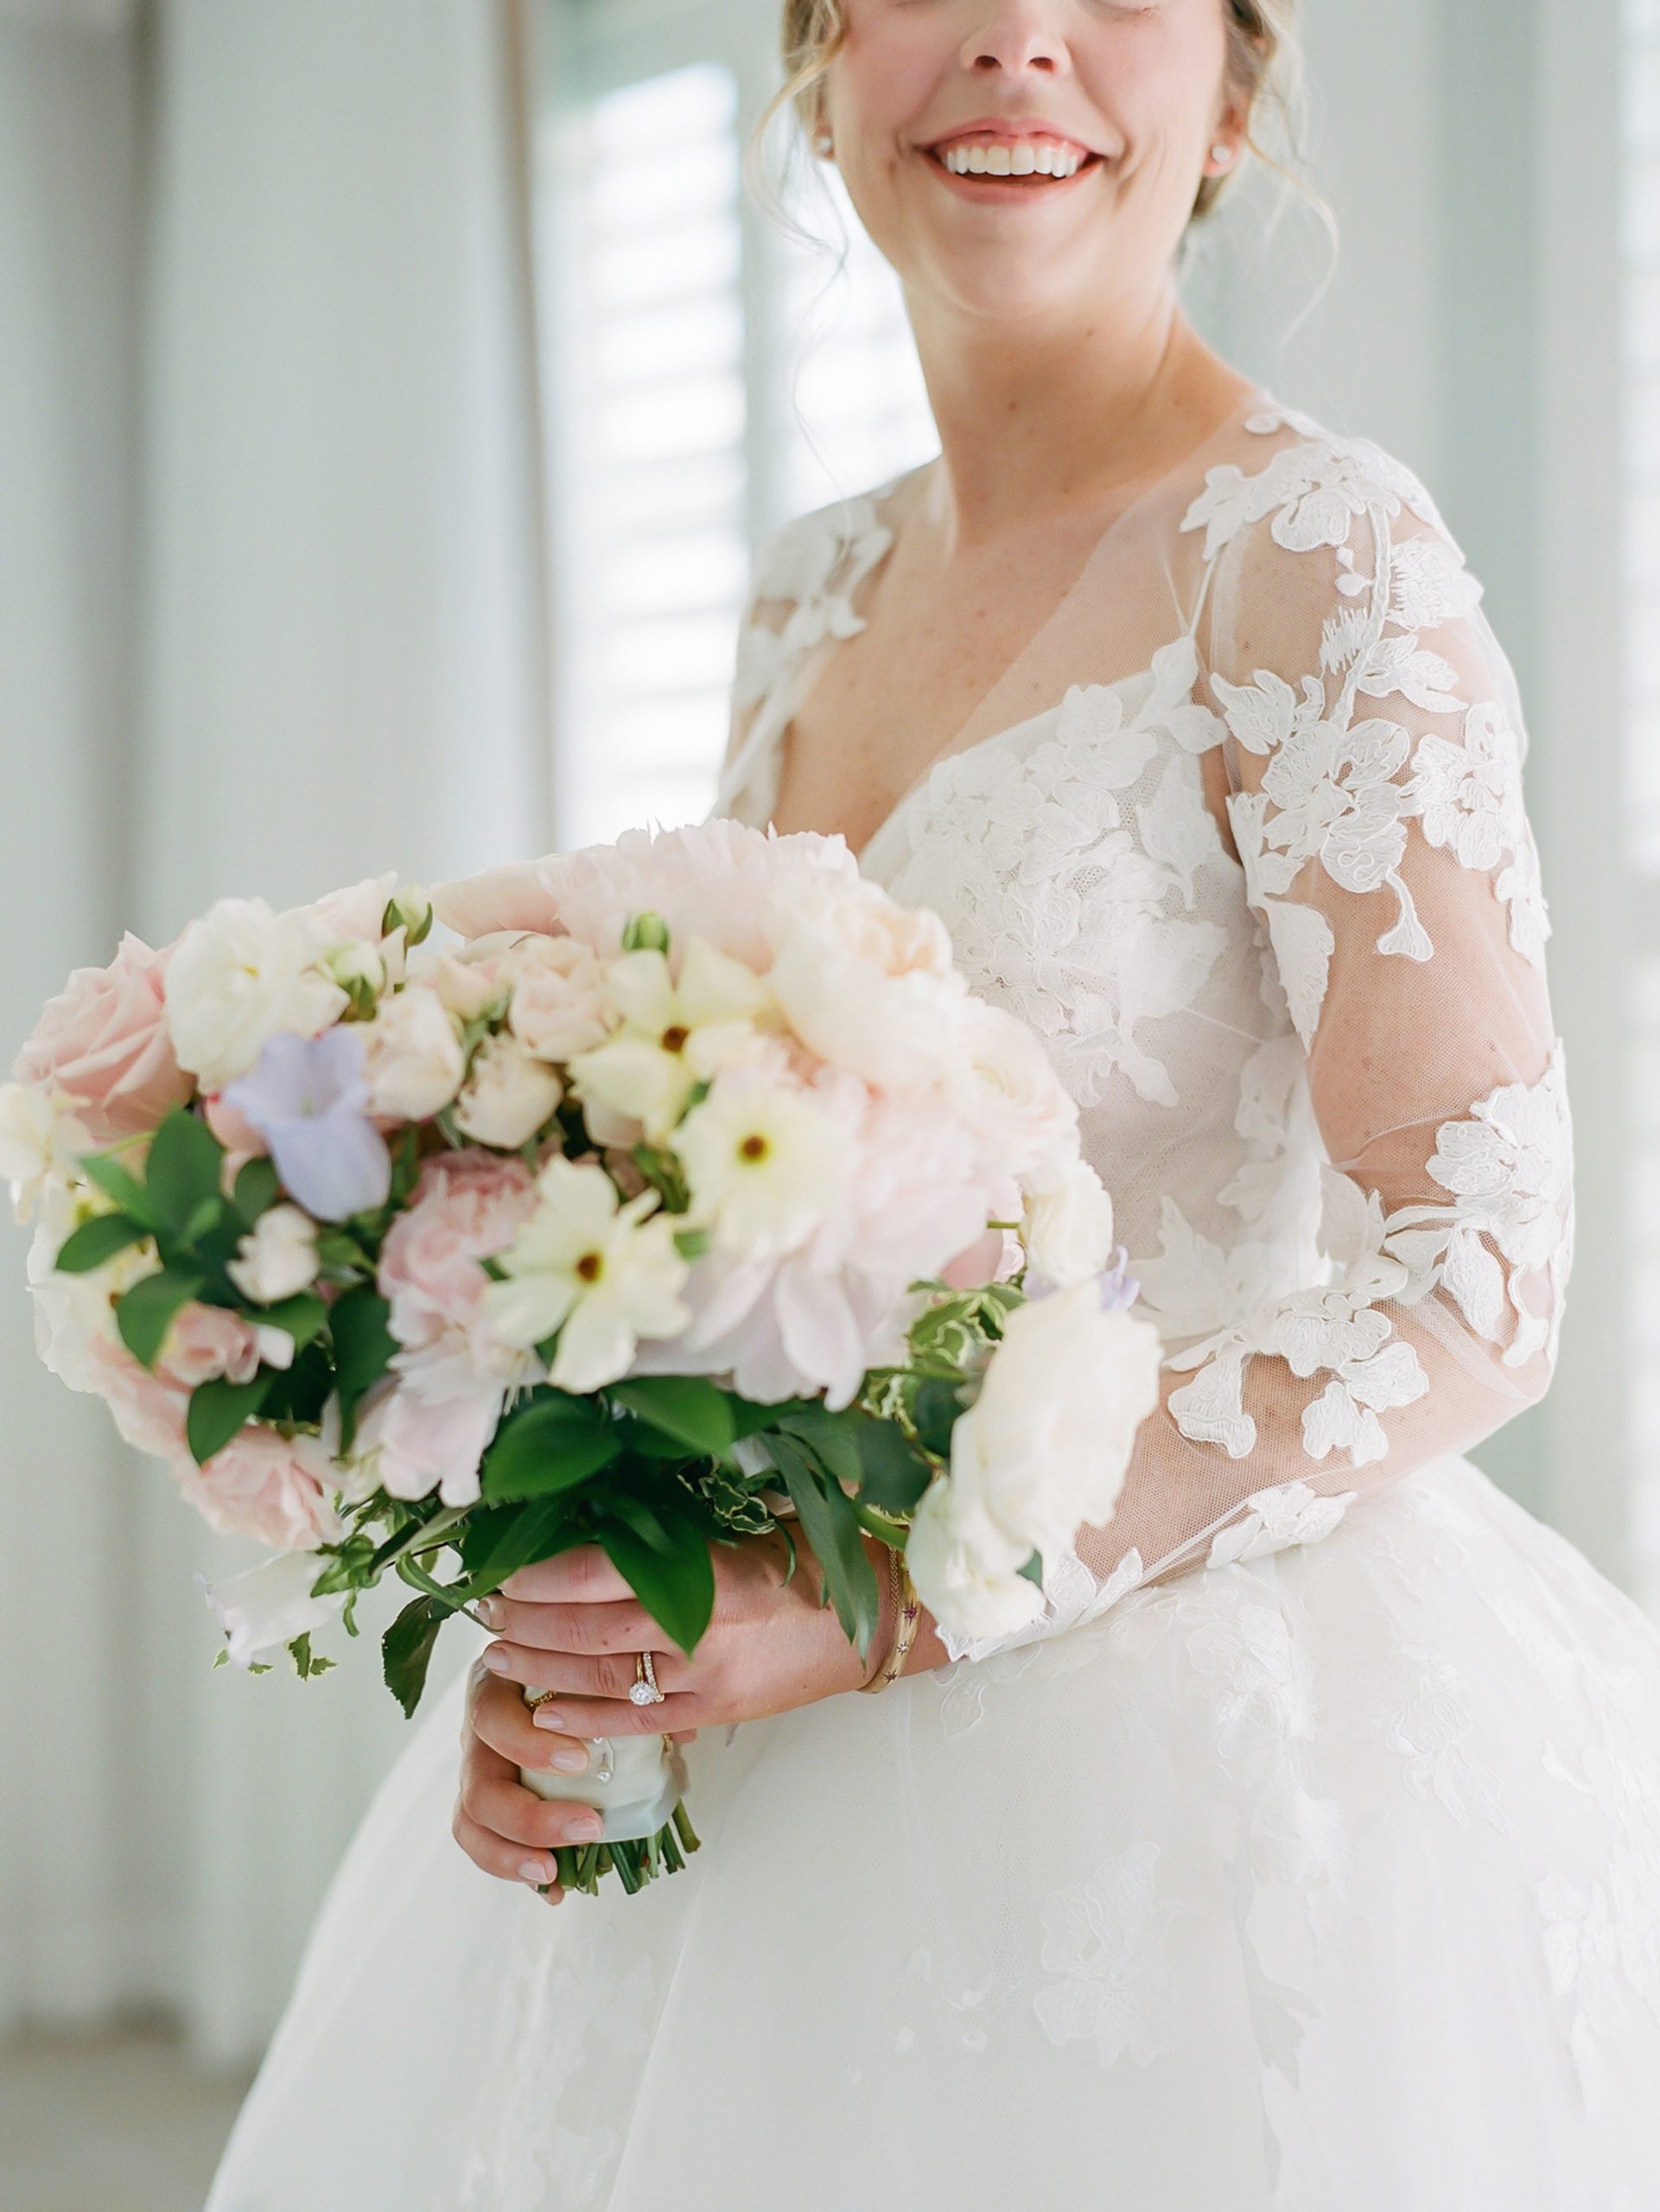 bridal bouquet, wedding flowers, wedding dress, spring wedding, bride